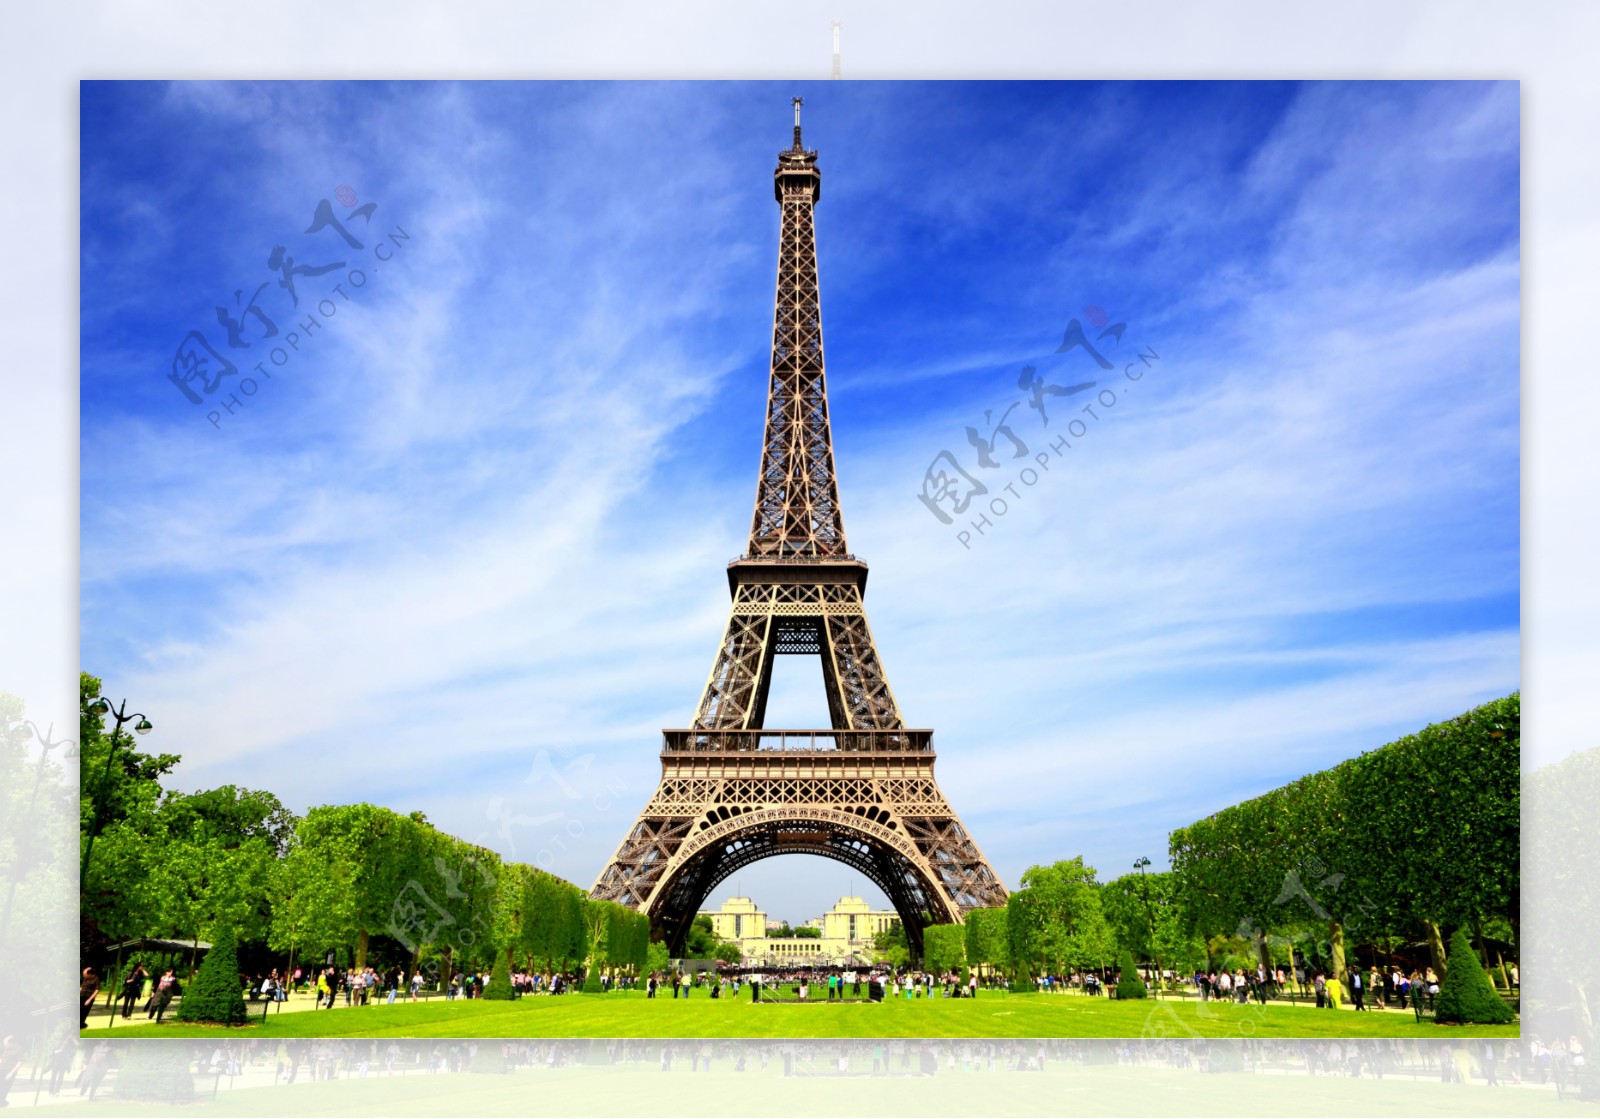 美丽的巴黎风景图片